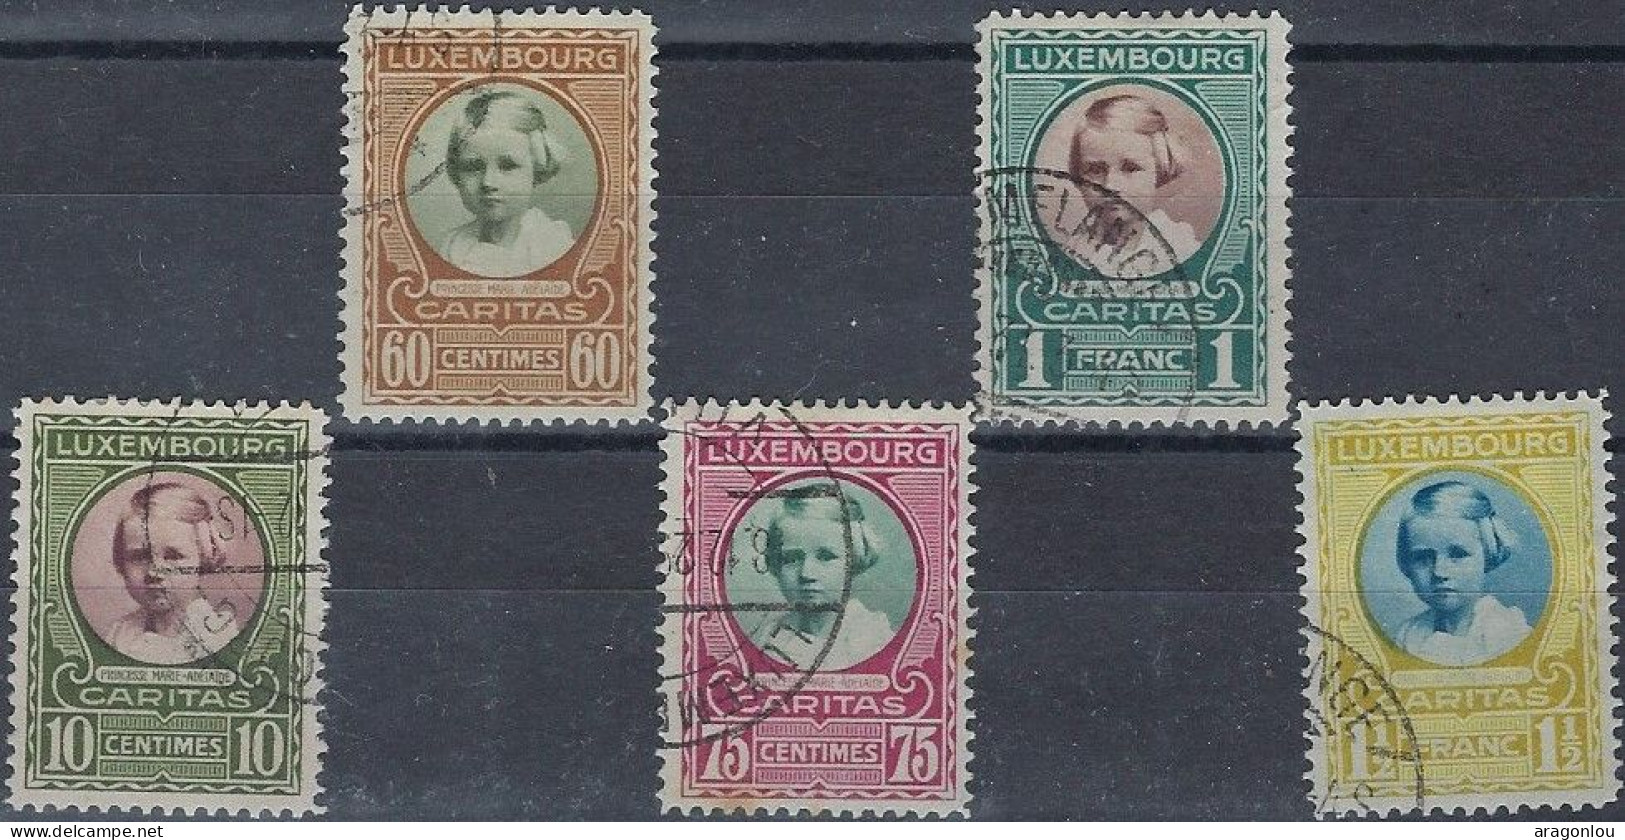 Luxembourg - Luxemburg -  Timbre  Série   1928   °   Marie - Adélaïde    VC. 60,- - Gebruikt